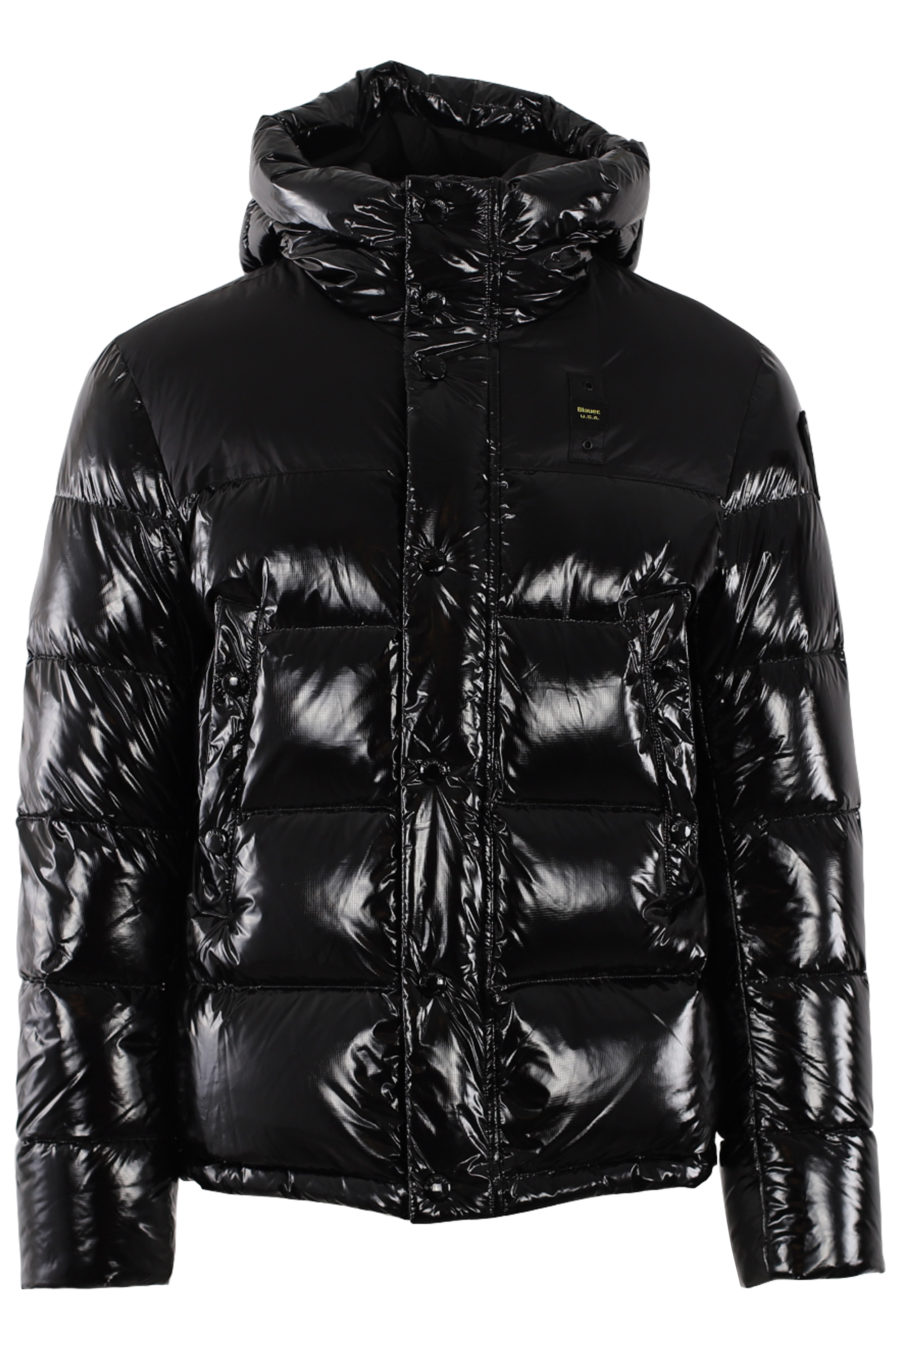 Black shiny jacket - IMG 0496